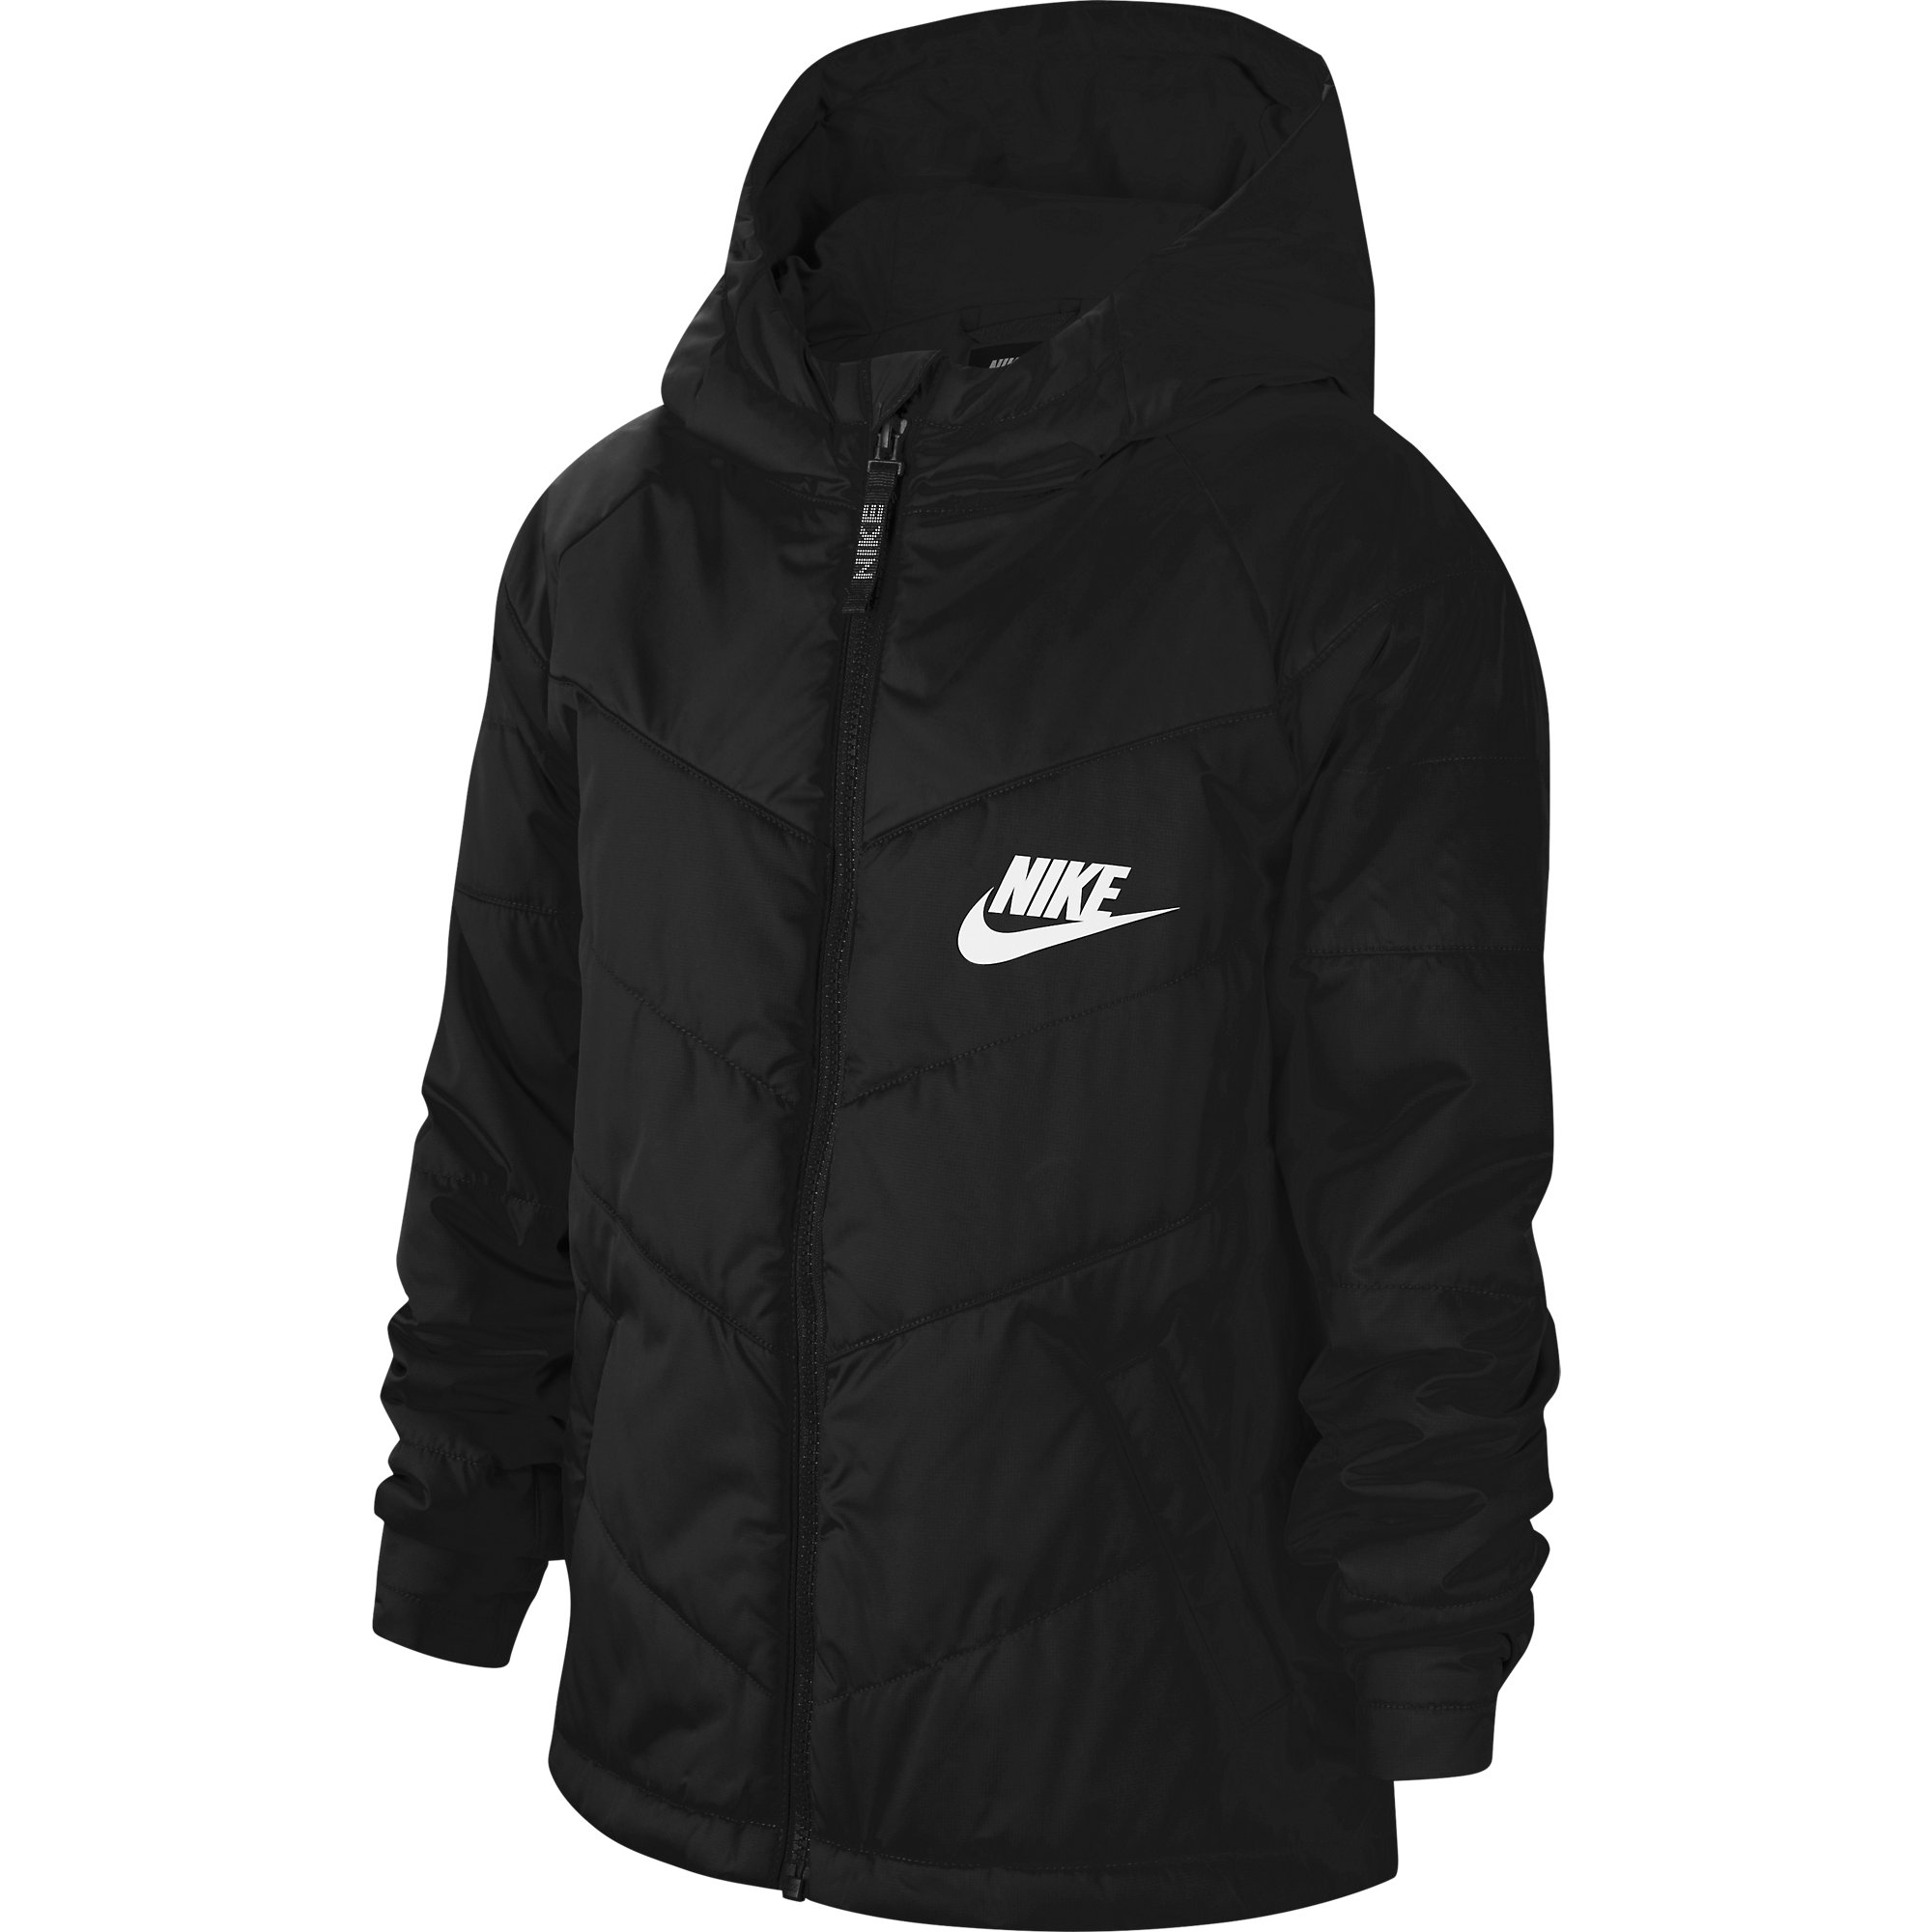 Nike Sportswear syn Jacket